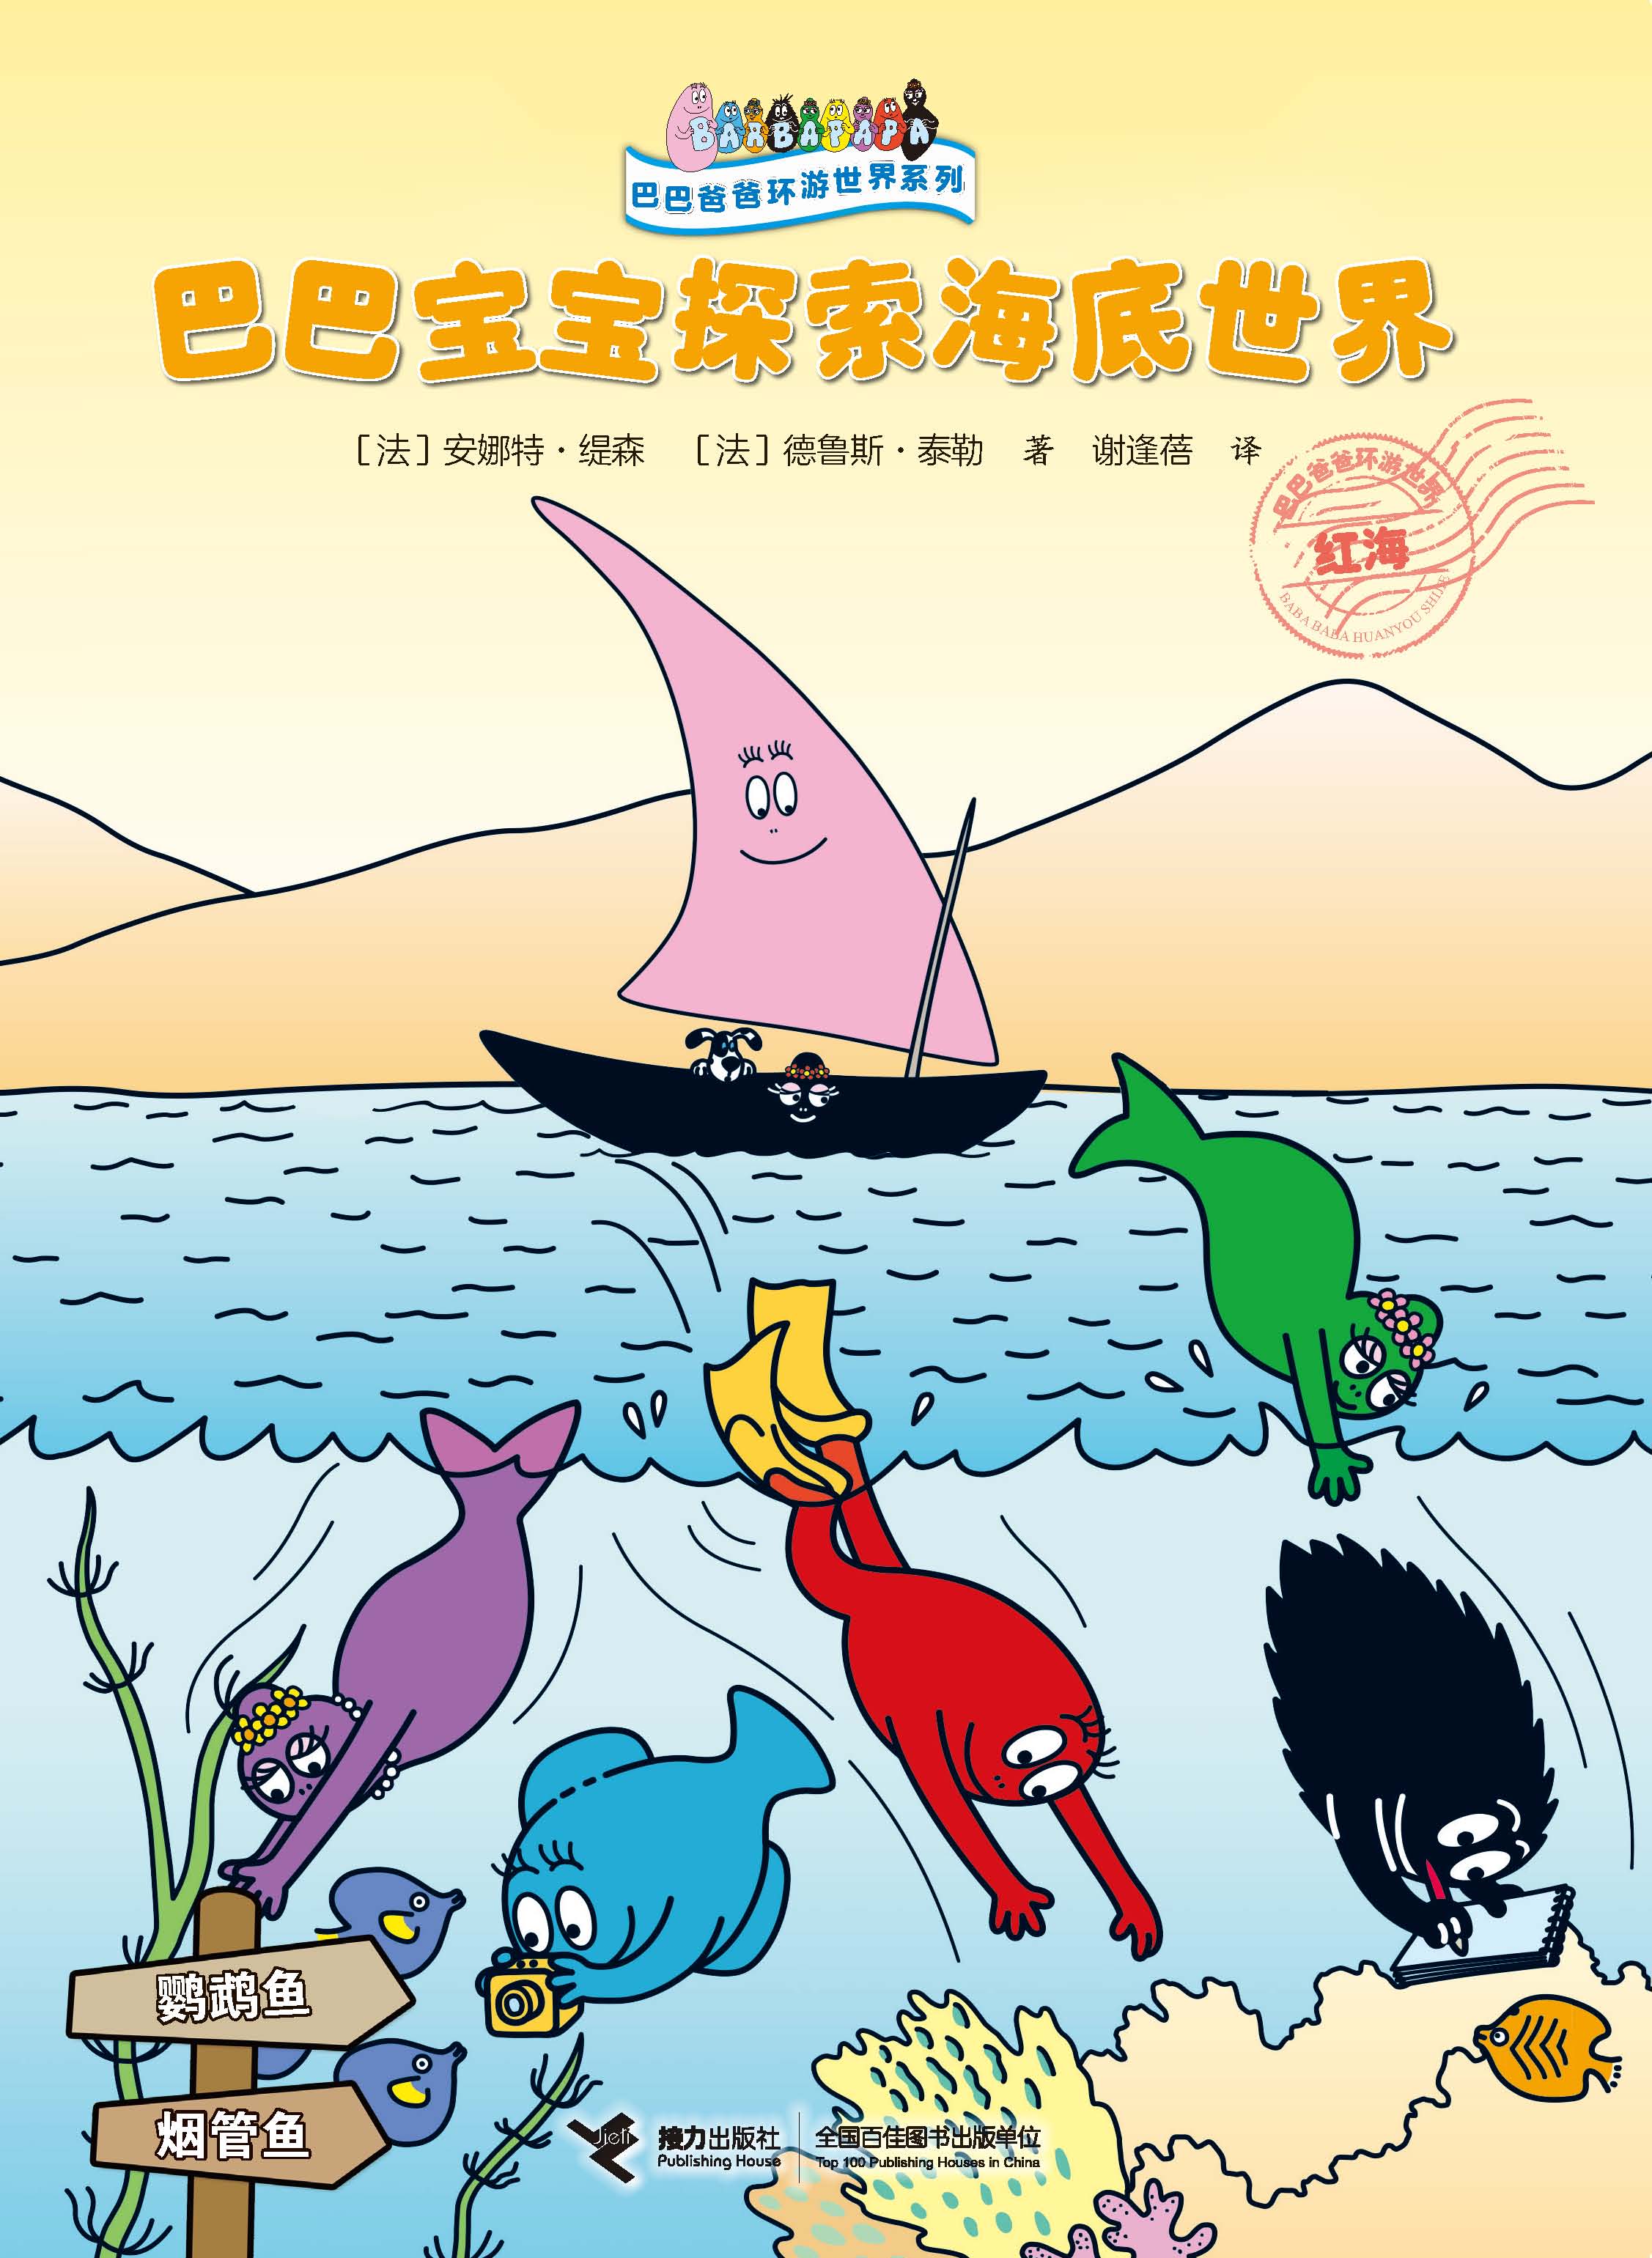 巴巴爸爸环游世界系列:巴巴宝宝探索海底世界